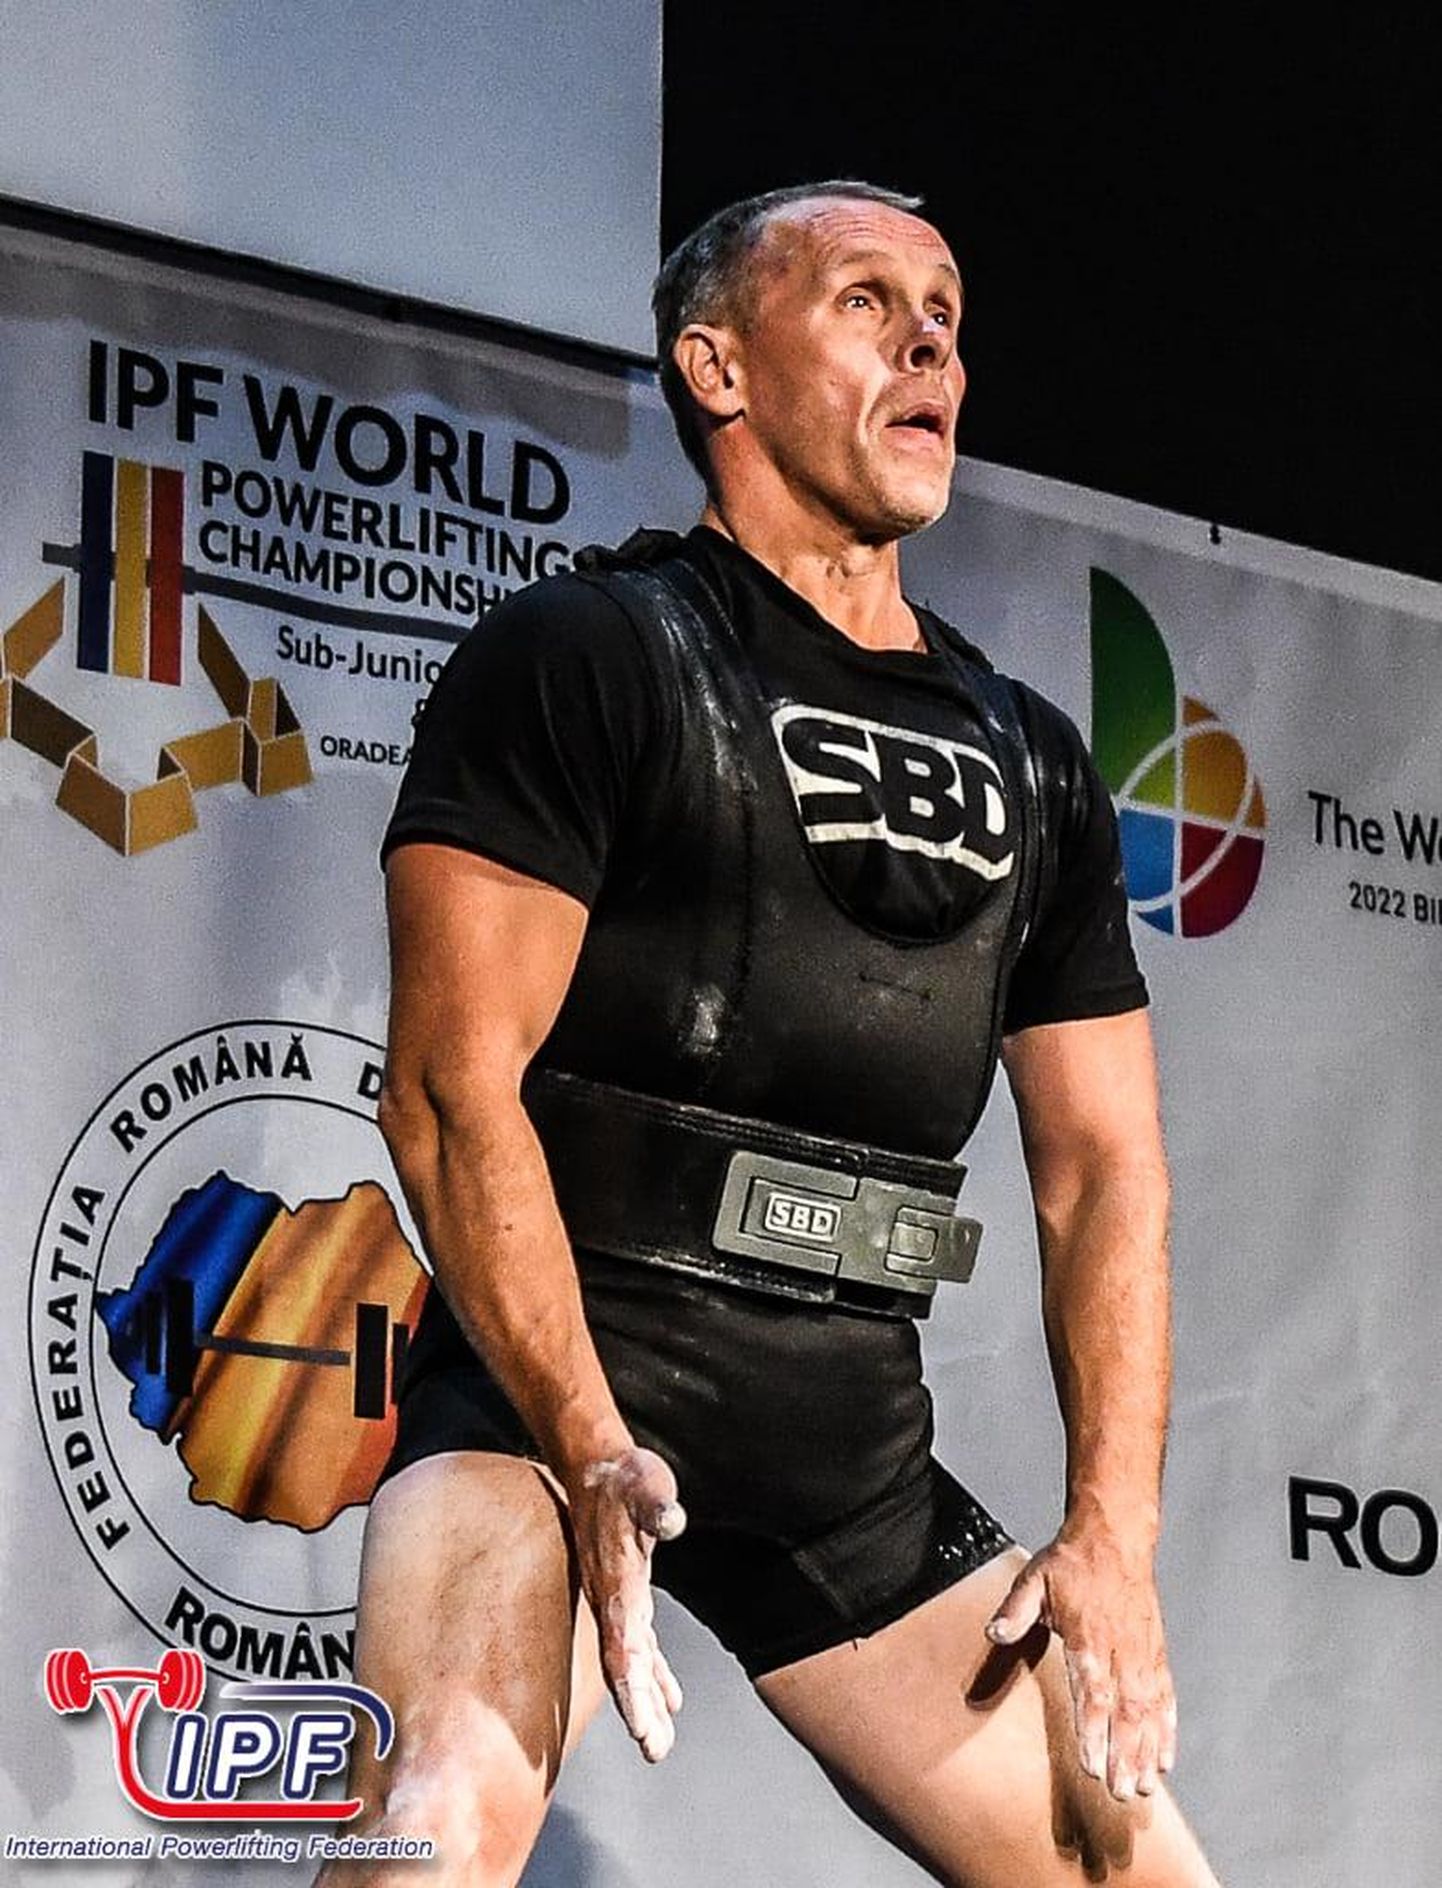 TÜASKi jõutõstmise treener Peep Päll võitis seenioride –74 kg kategoorias maailmameistritiitli.